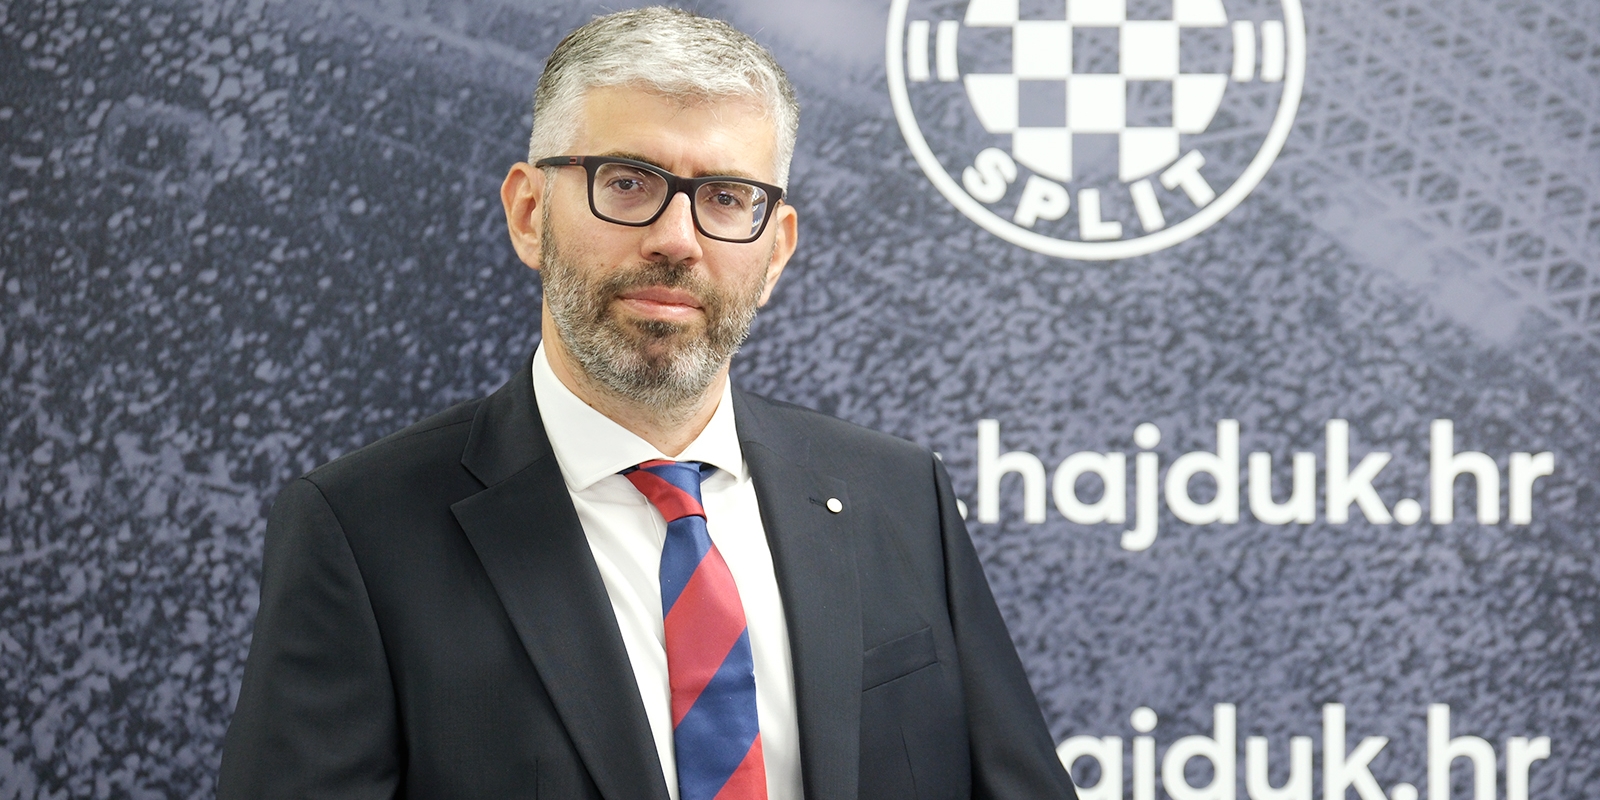 SLUŽBENO: Ivan Bilić je novi predsjednik Hajduka